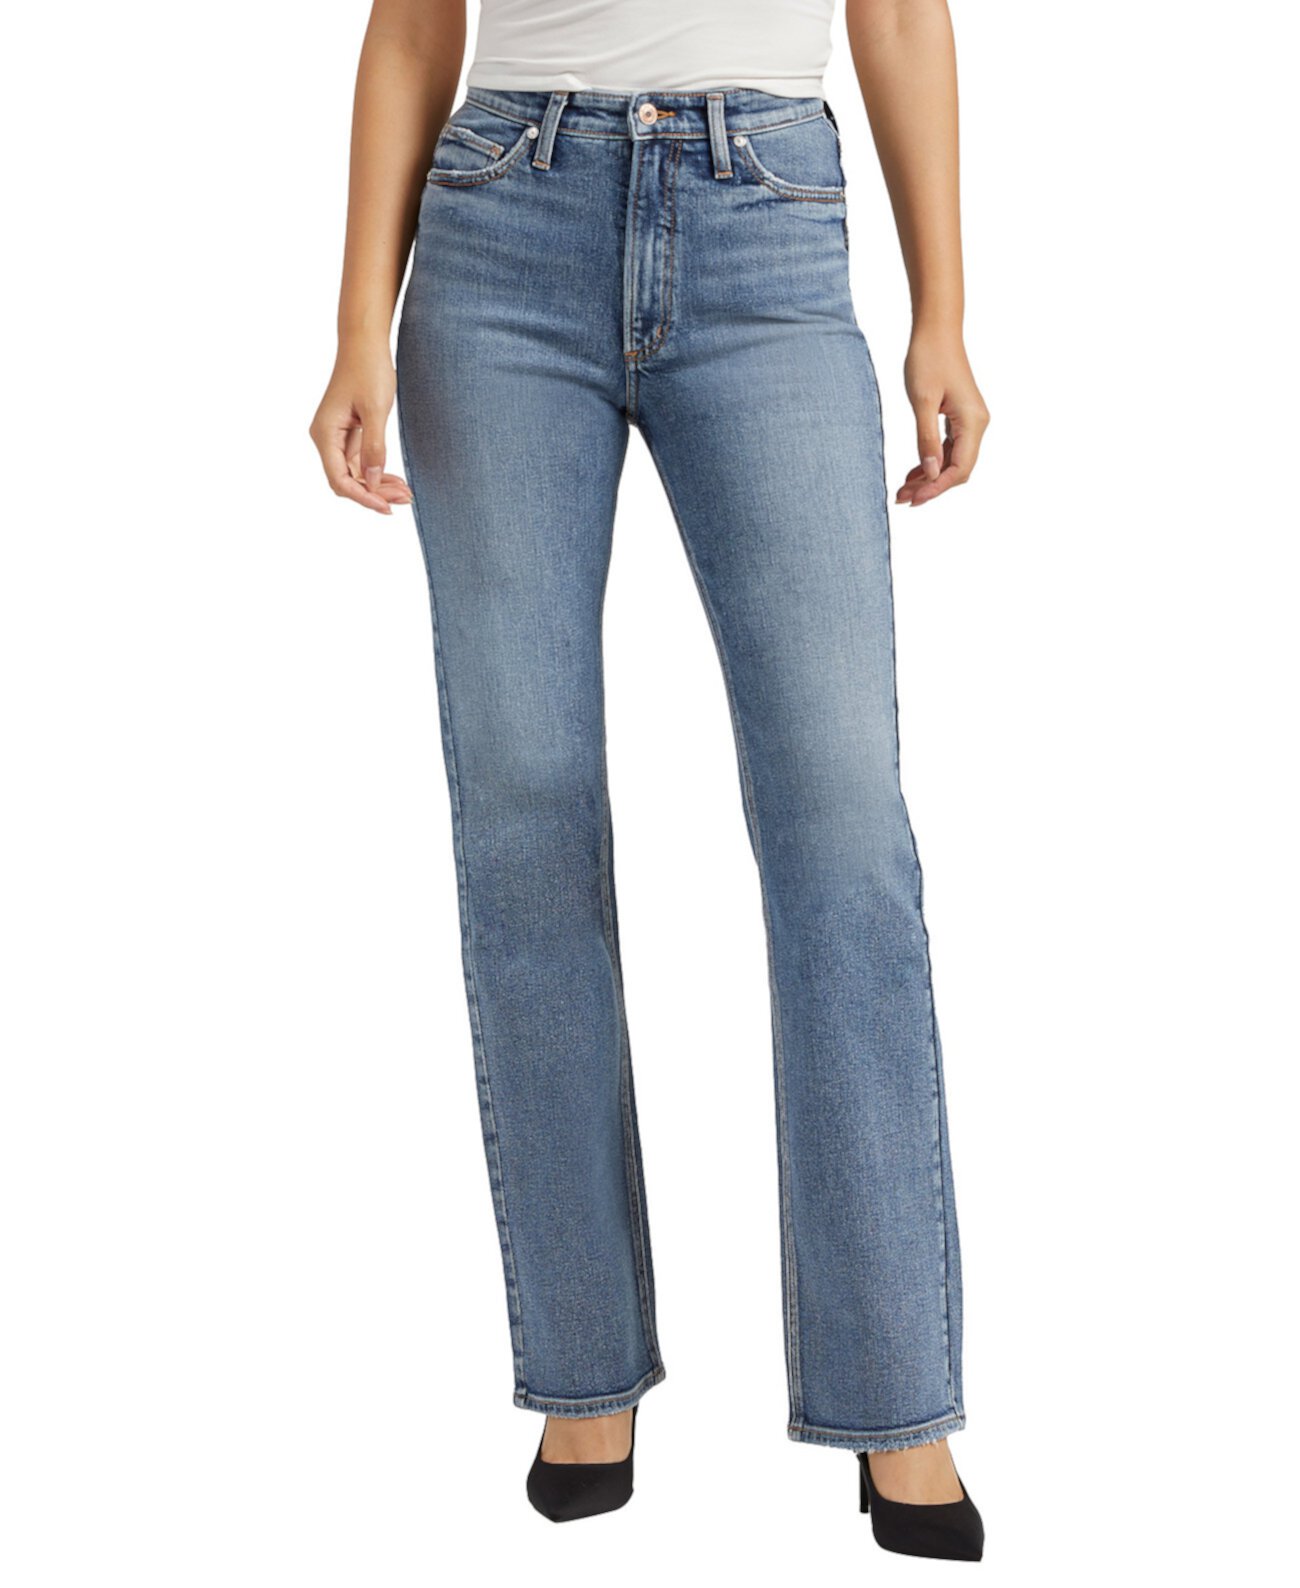 Женские джинсы Bootcut с высокой посадкой в винтажном стиле 90-х годов Silver Jeans Co.